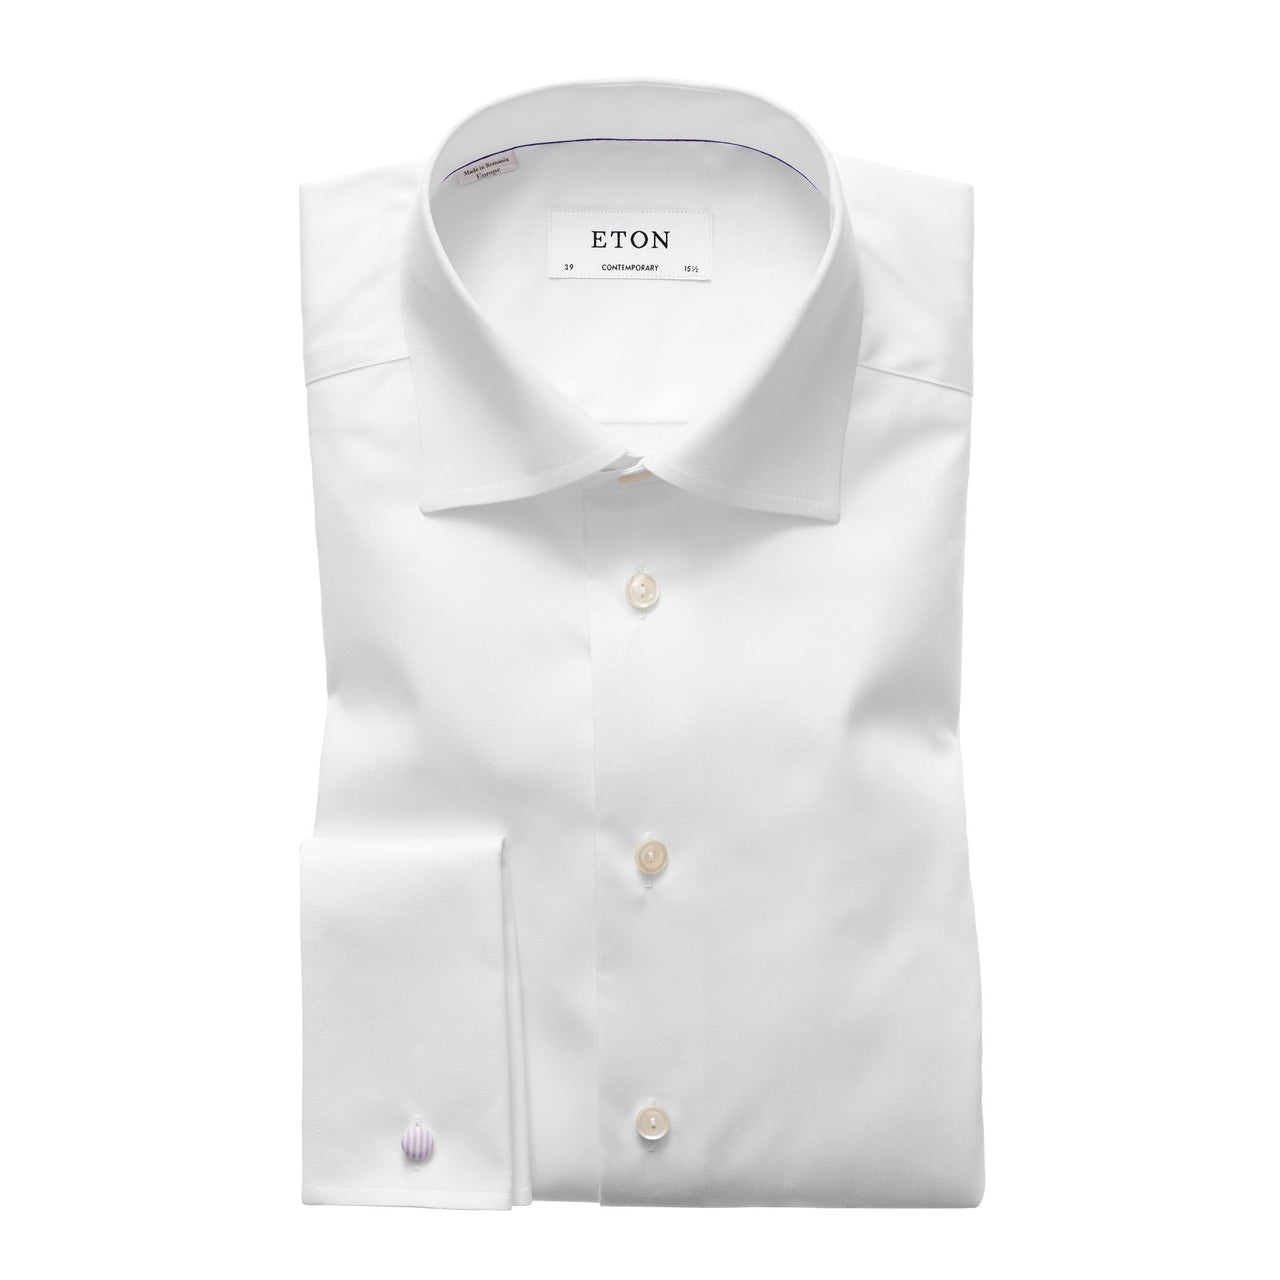 ETON Signature Twill Shirt - French Cuffs WHITE